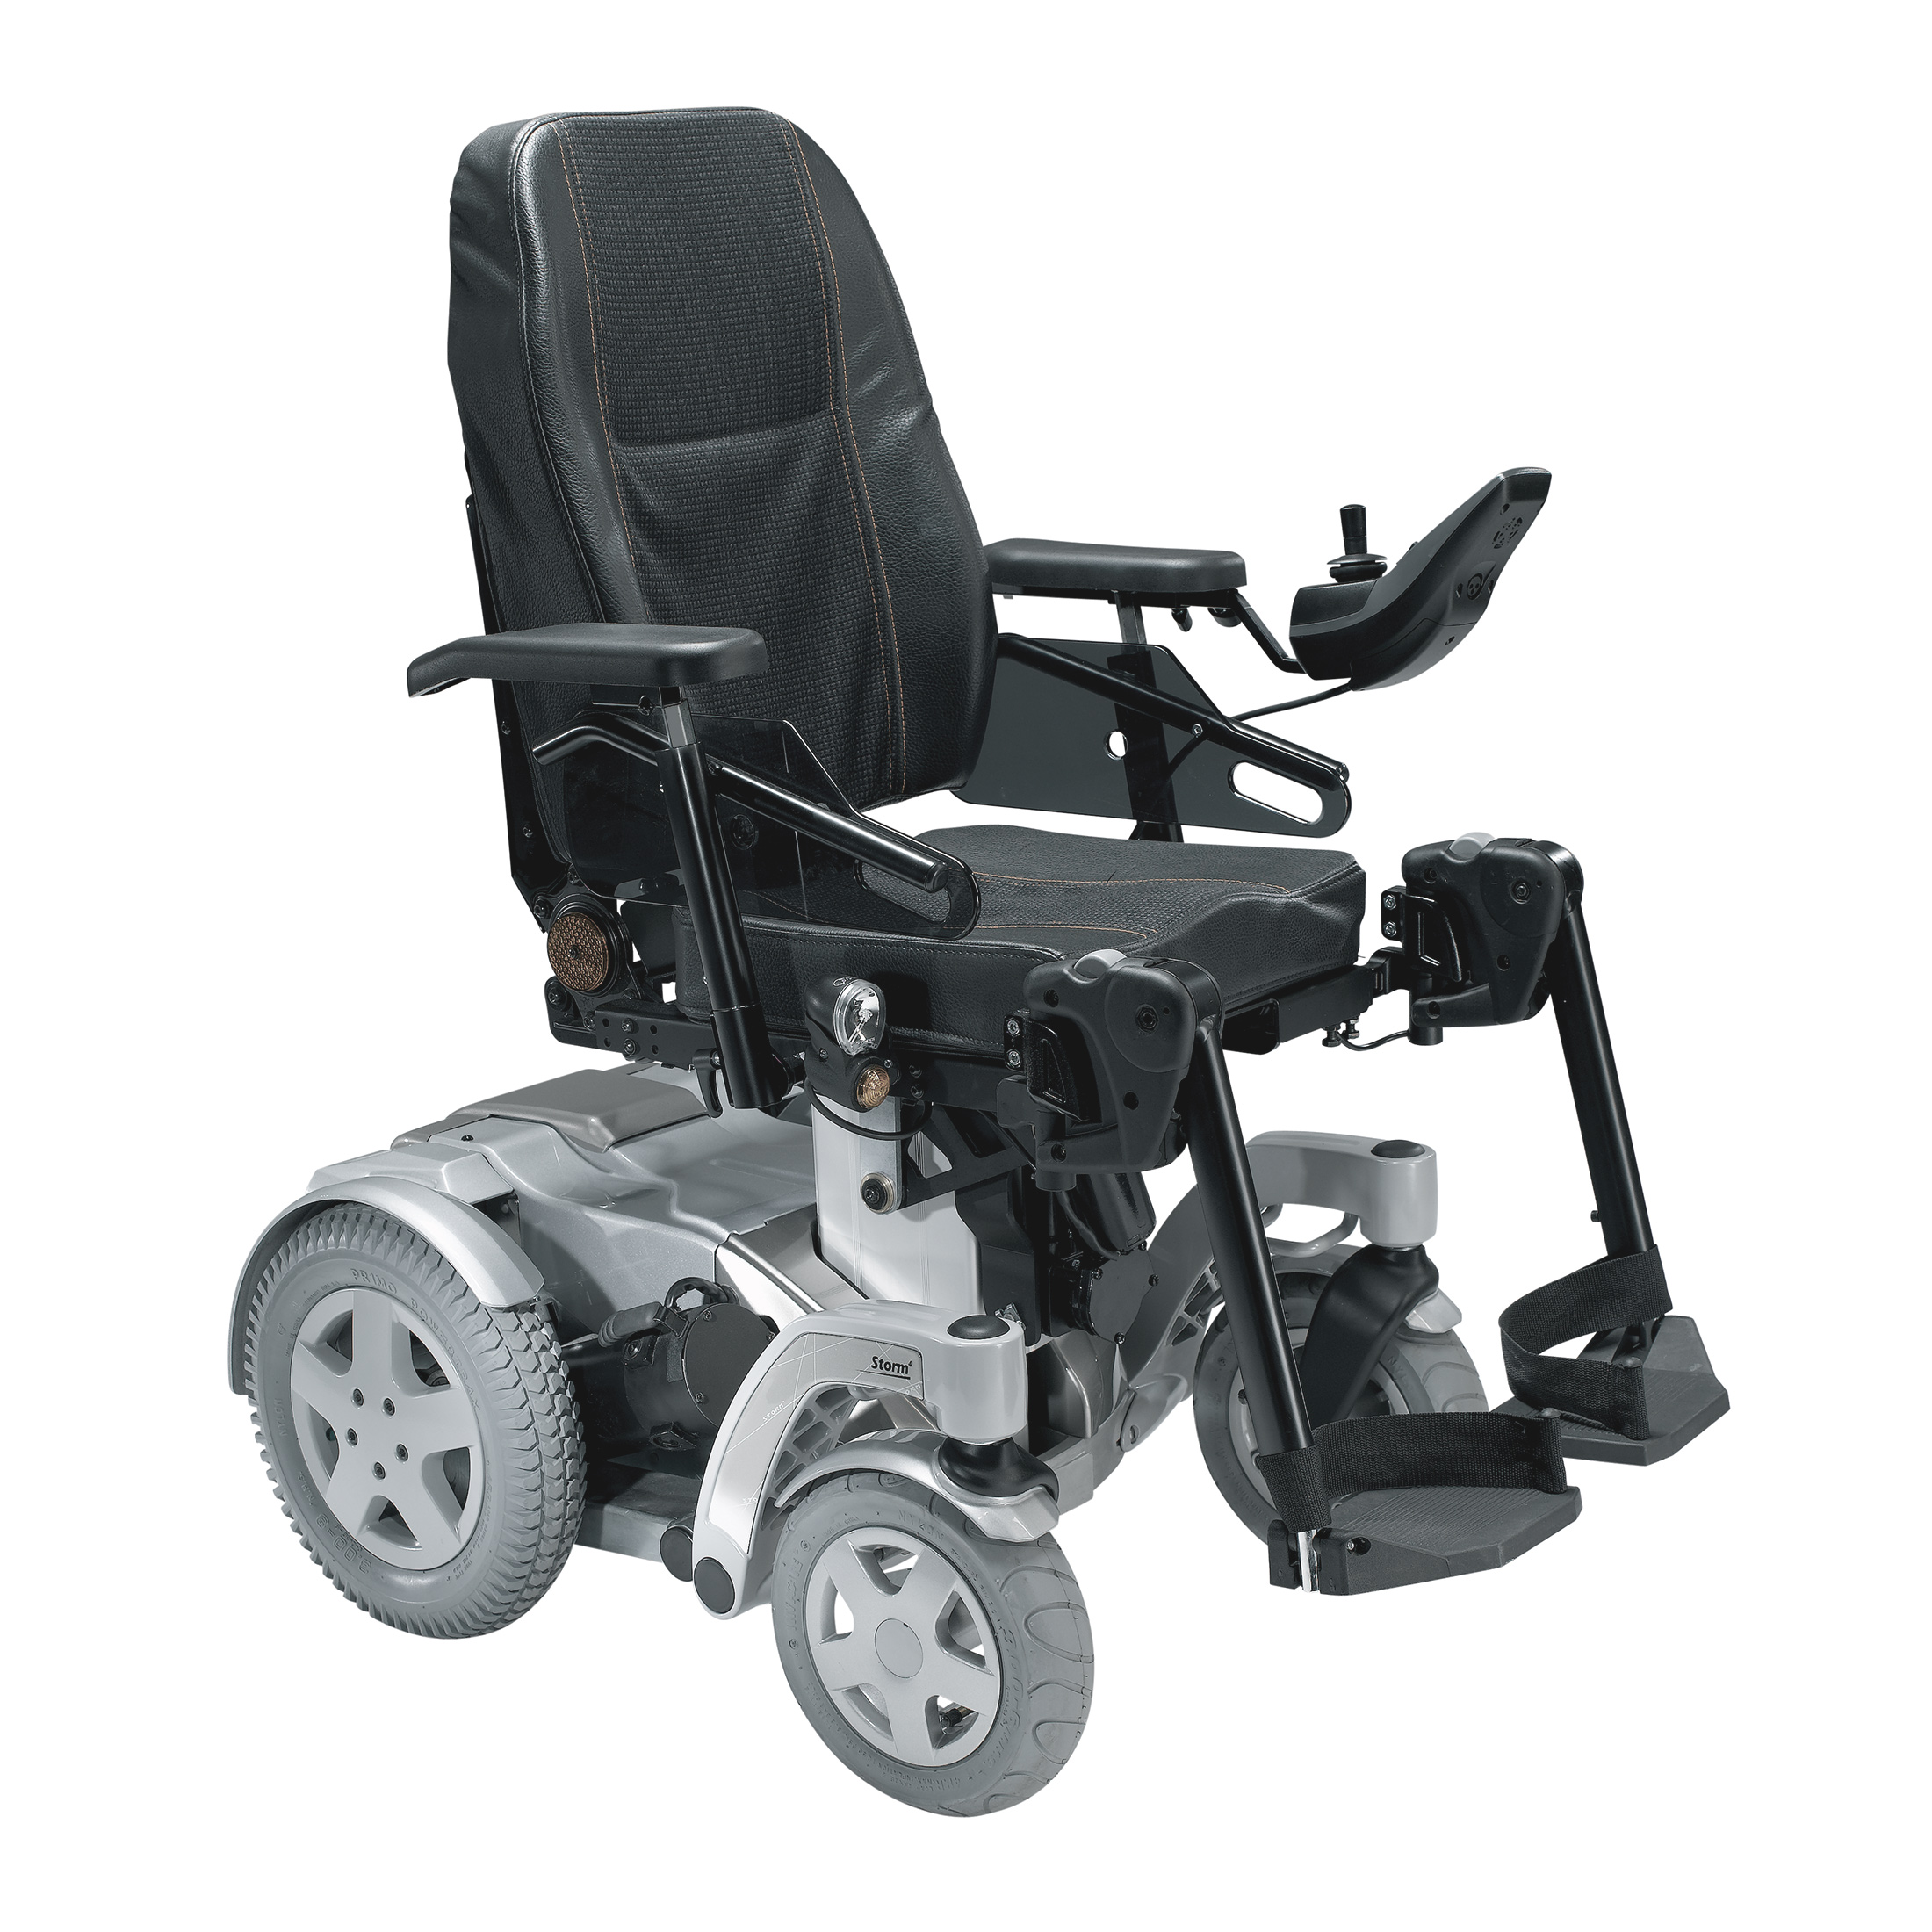 Brein Overleven koffer Invacare Storm4 elektrische rolstoel - Invacare Netherland